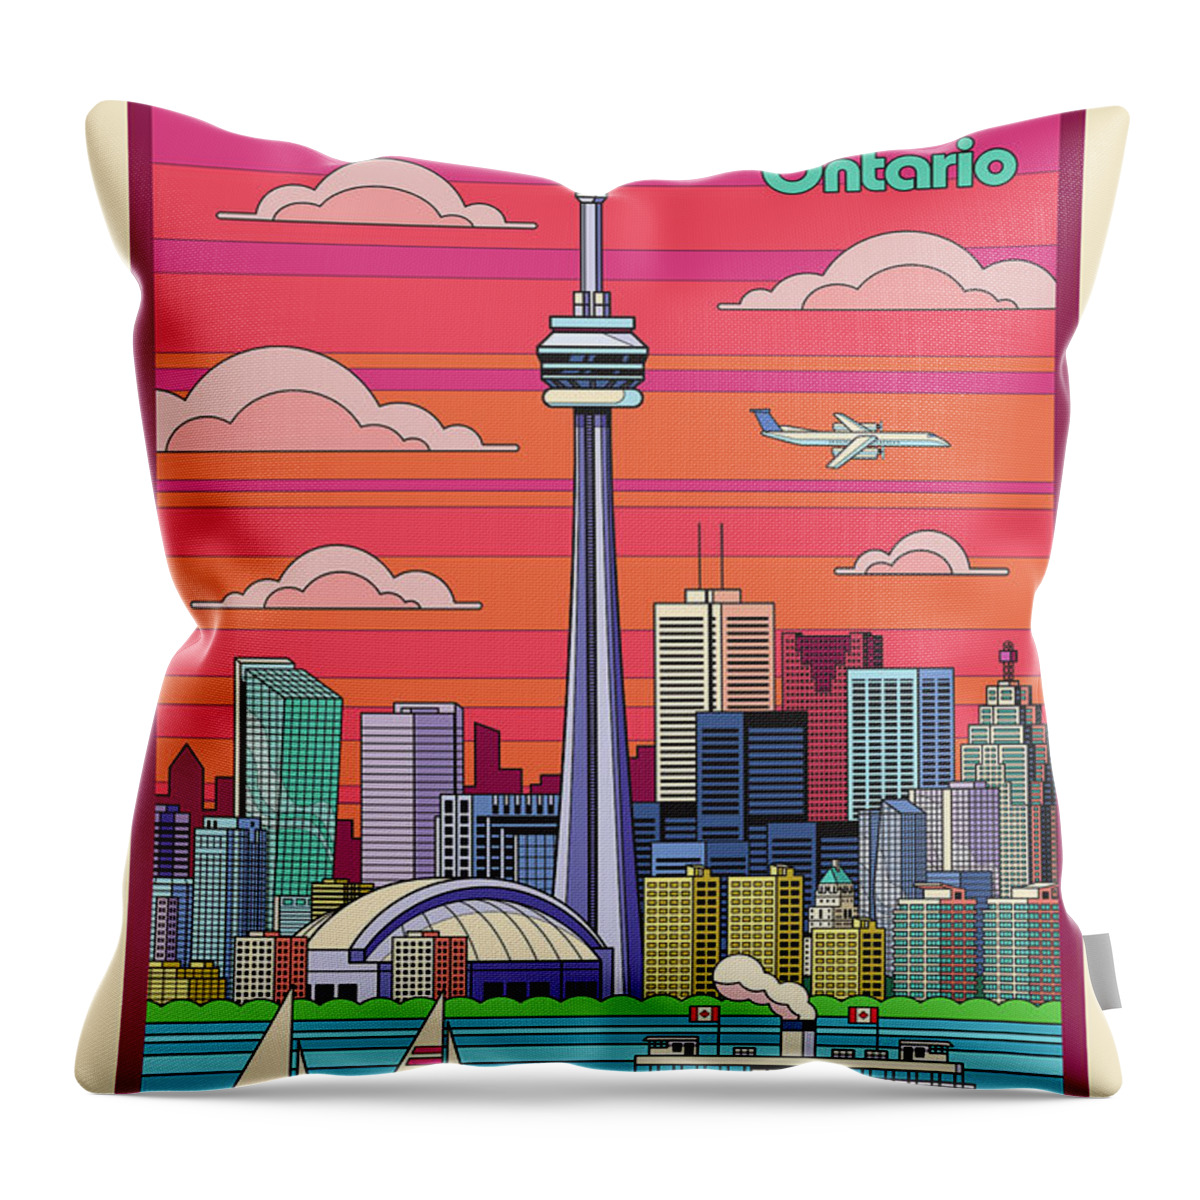 Travel Poster Throw Pillow featuring the digital art Toronto Pop Art Poster by Jim Zahniser